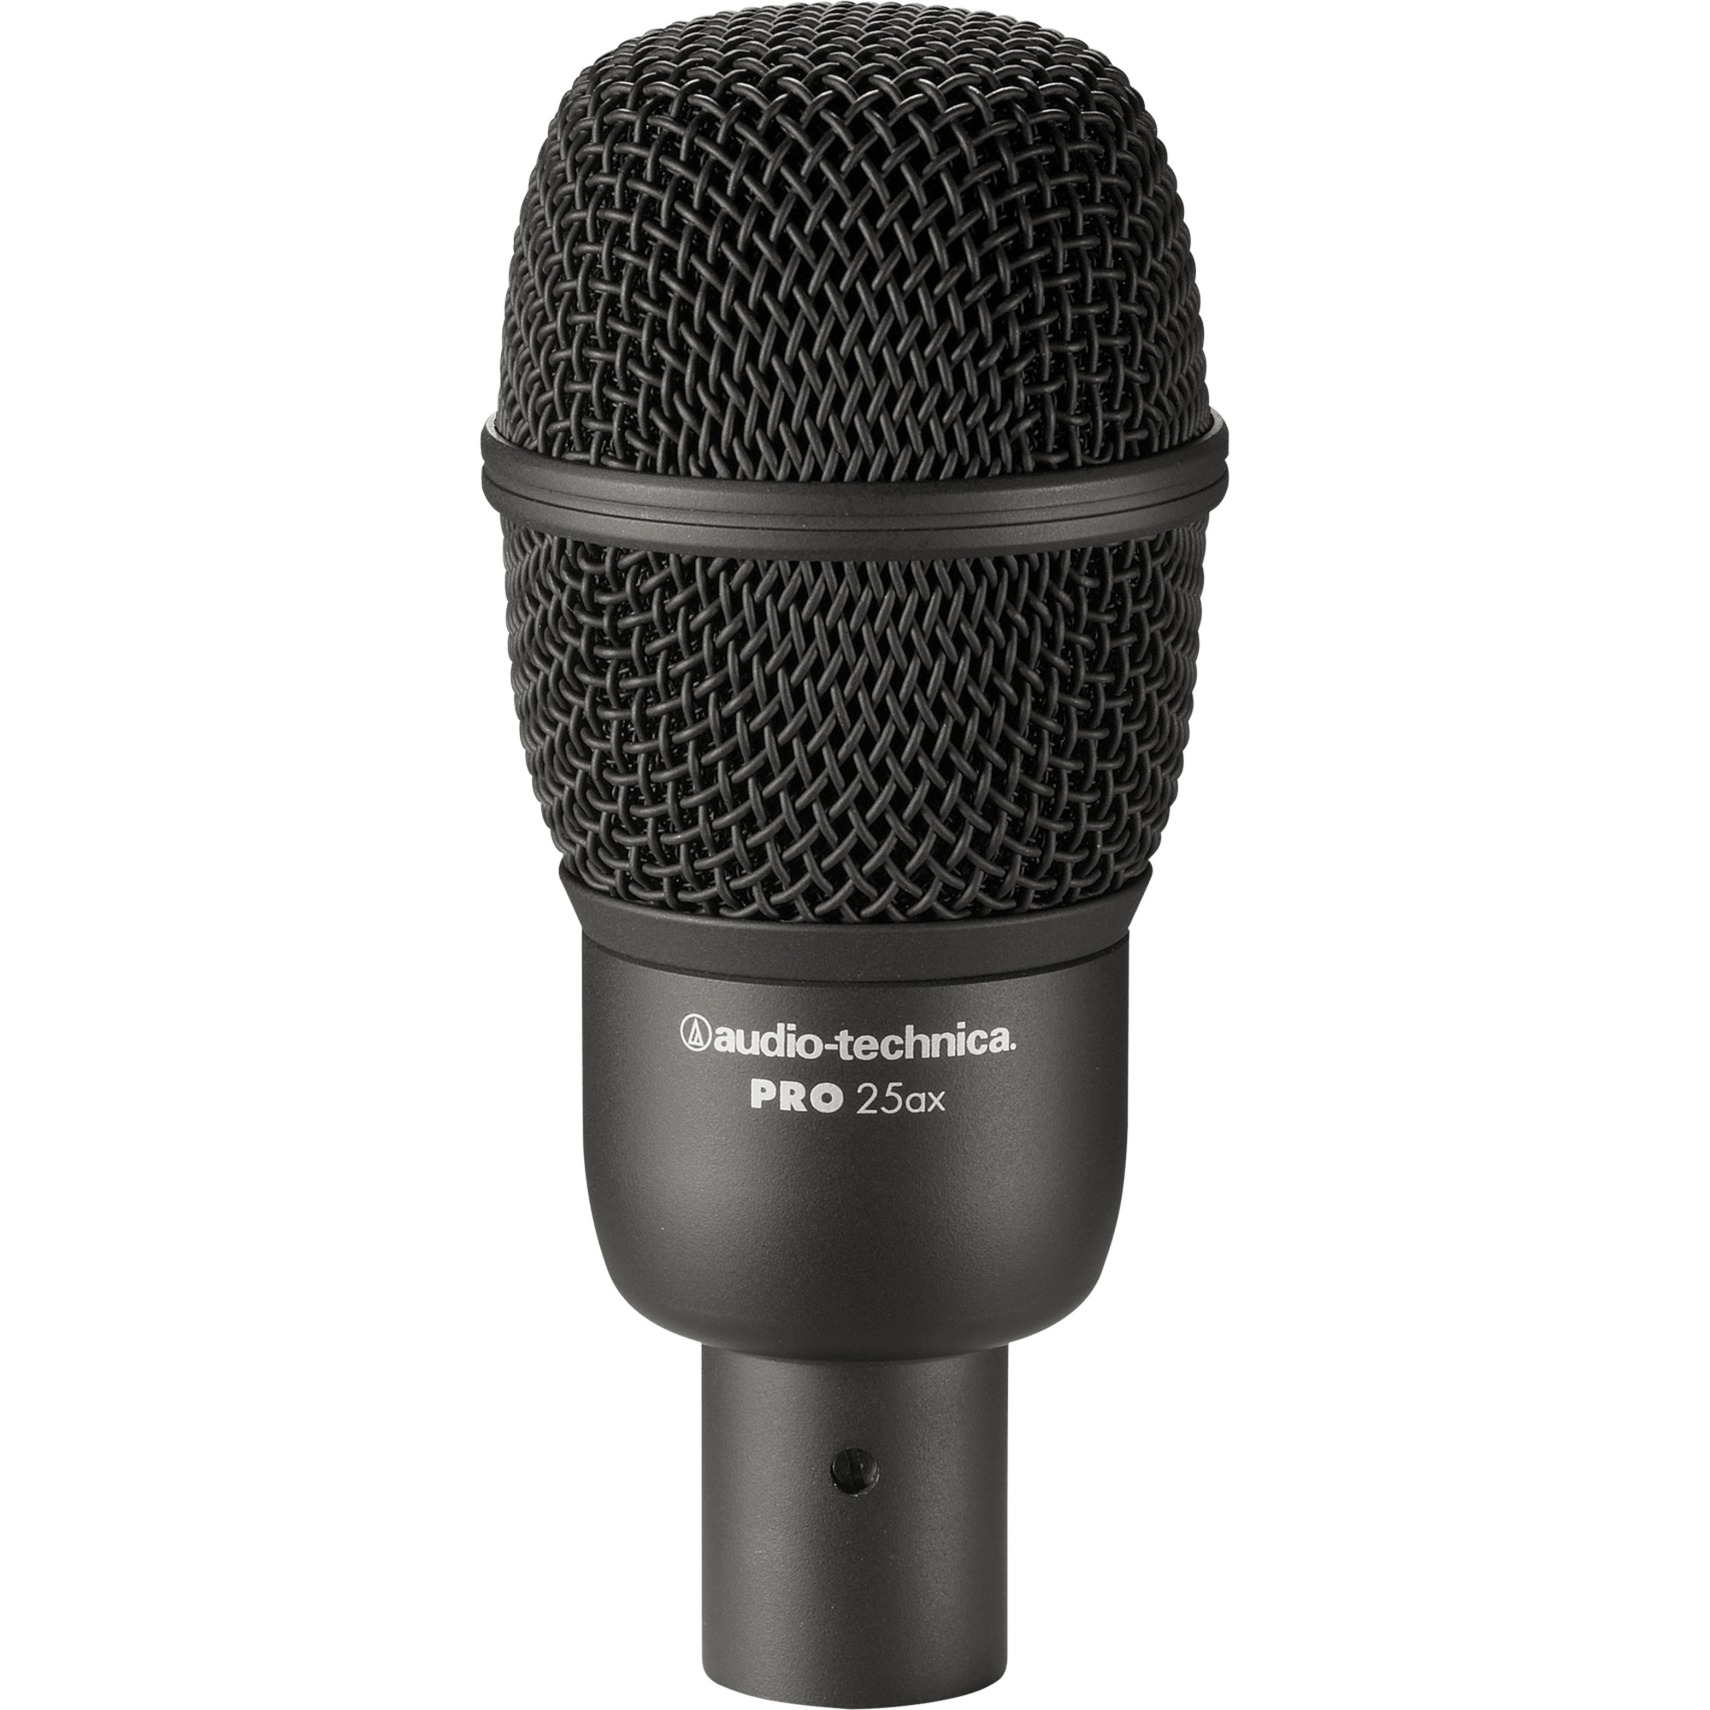 PRO25AX, Mikrofon von Audio-Technica